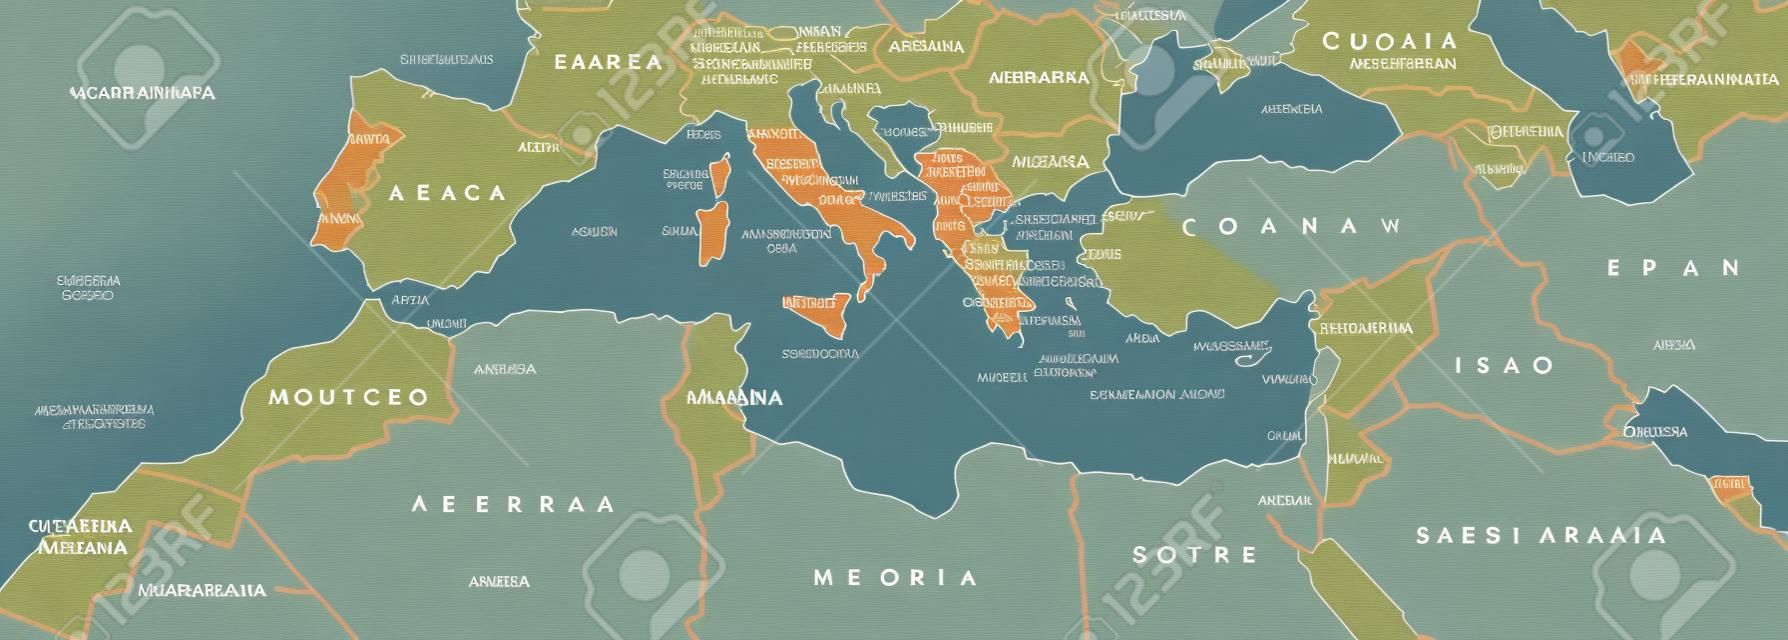 Mapa político da bacia do Mediterrâneo. Região do Mediterrâneo, também Mediterranea. Terras ao redor do Mar Mediterrâneo. Sul da Europa, Norte da África e Oriente Próximo. Ilustração cinza com rotulagem em inglês. Vector.